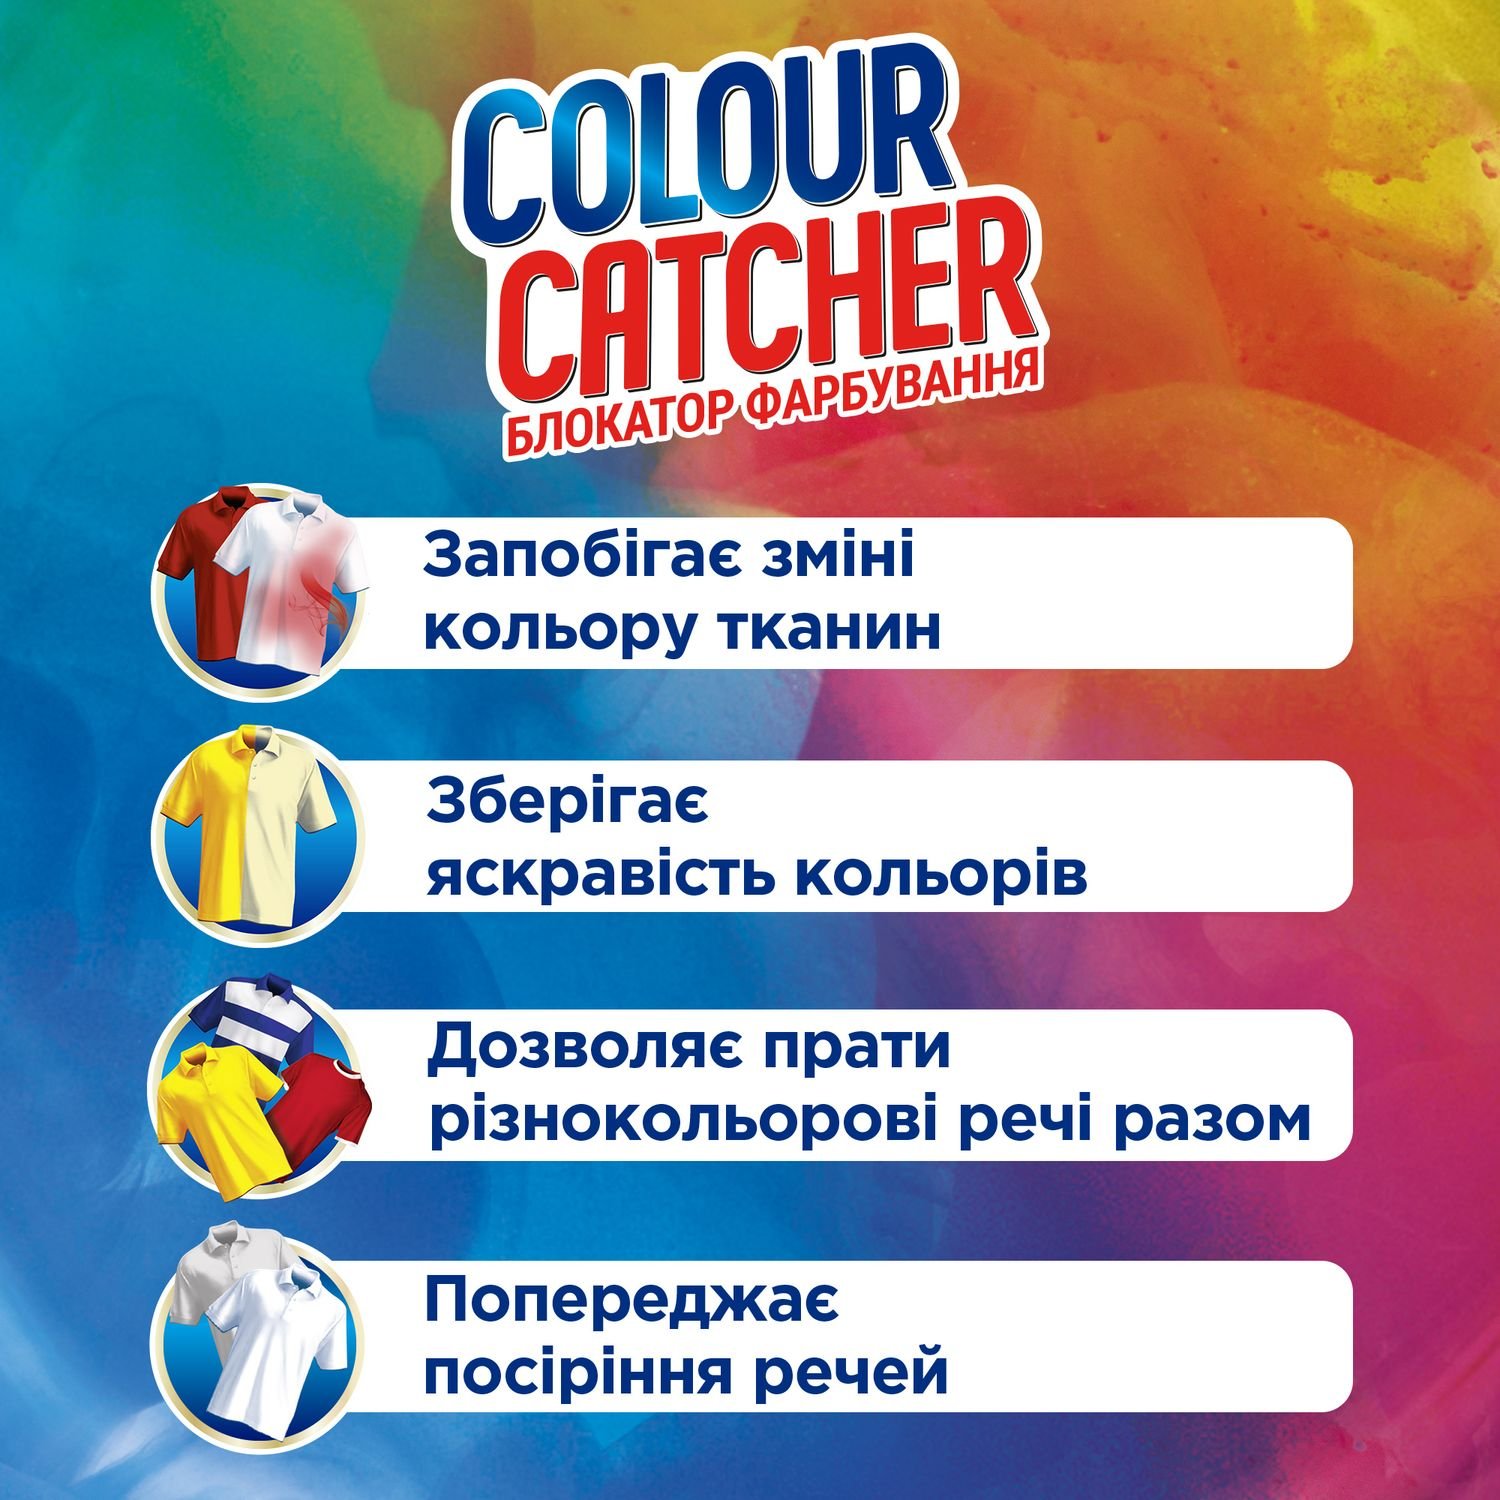 Салфетки для стирки K2r Colour Catcher цветопоглощение, 10 шт. - фото 3